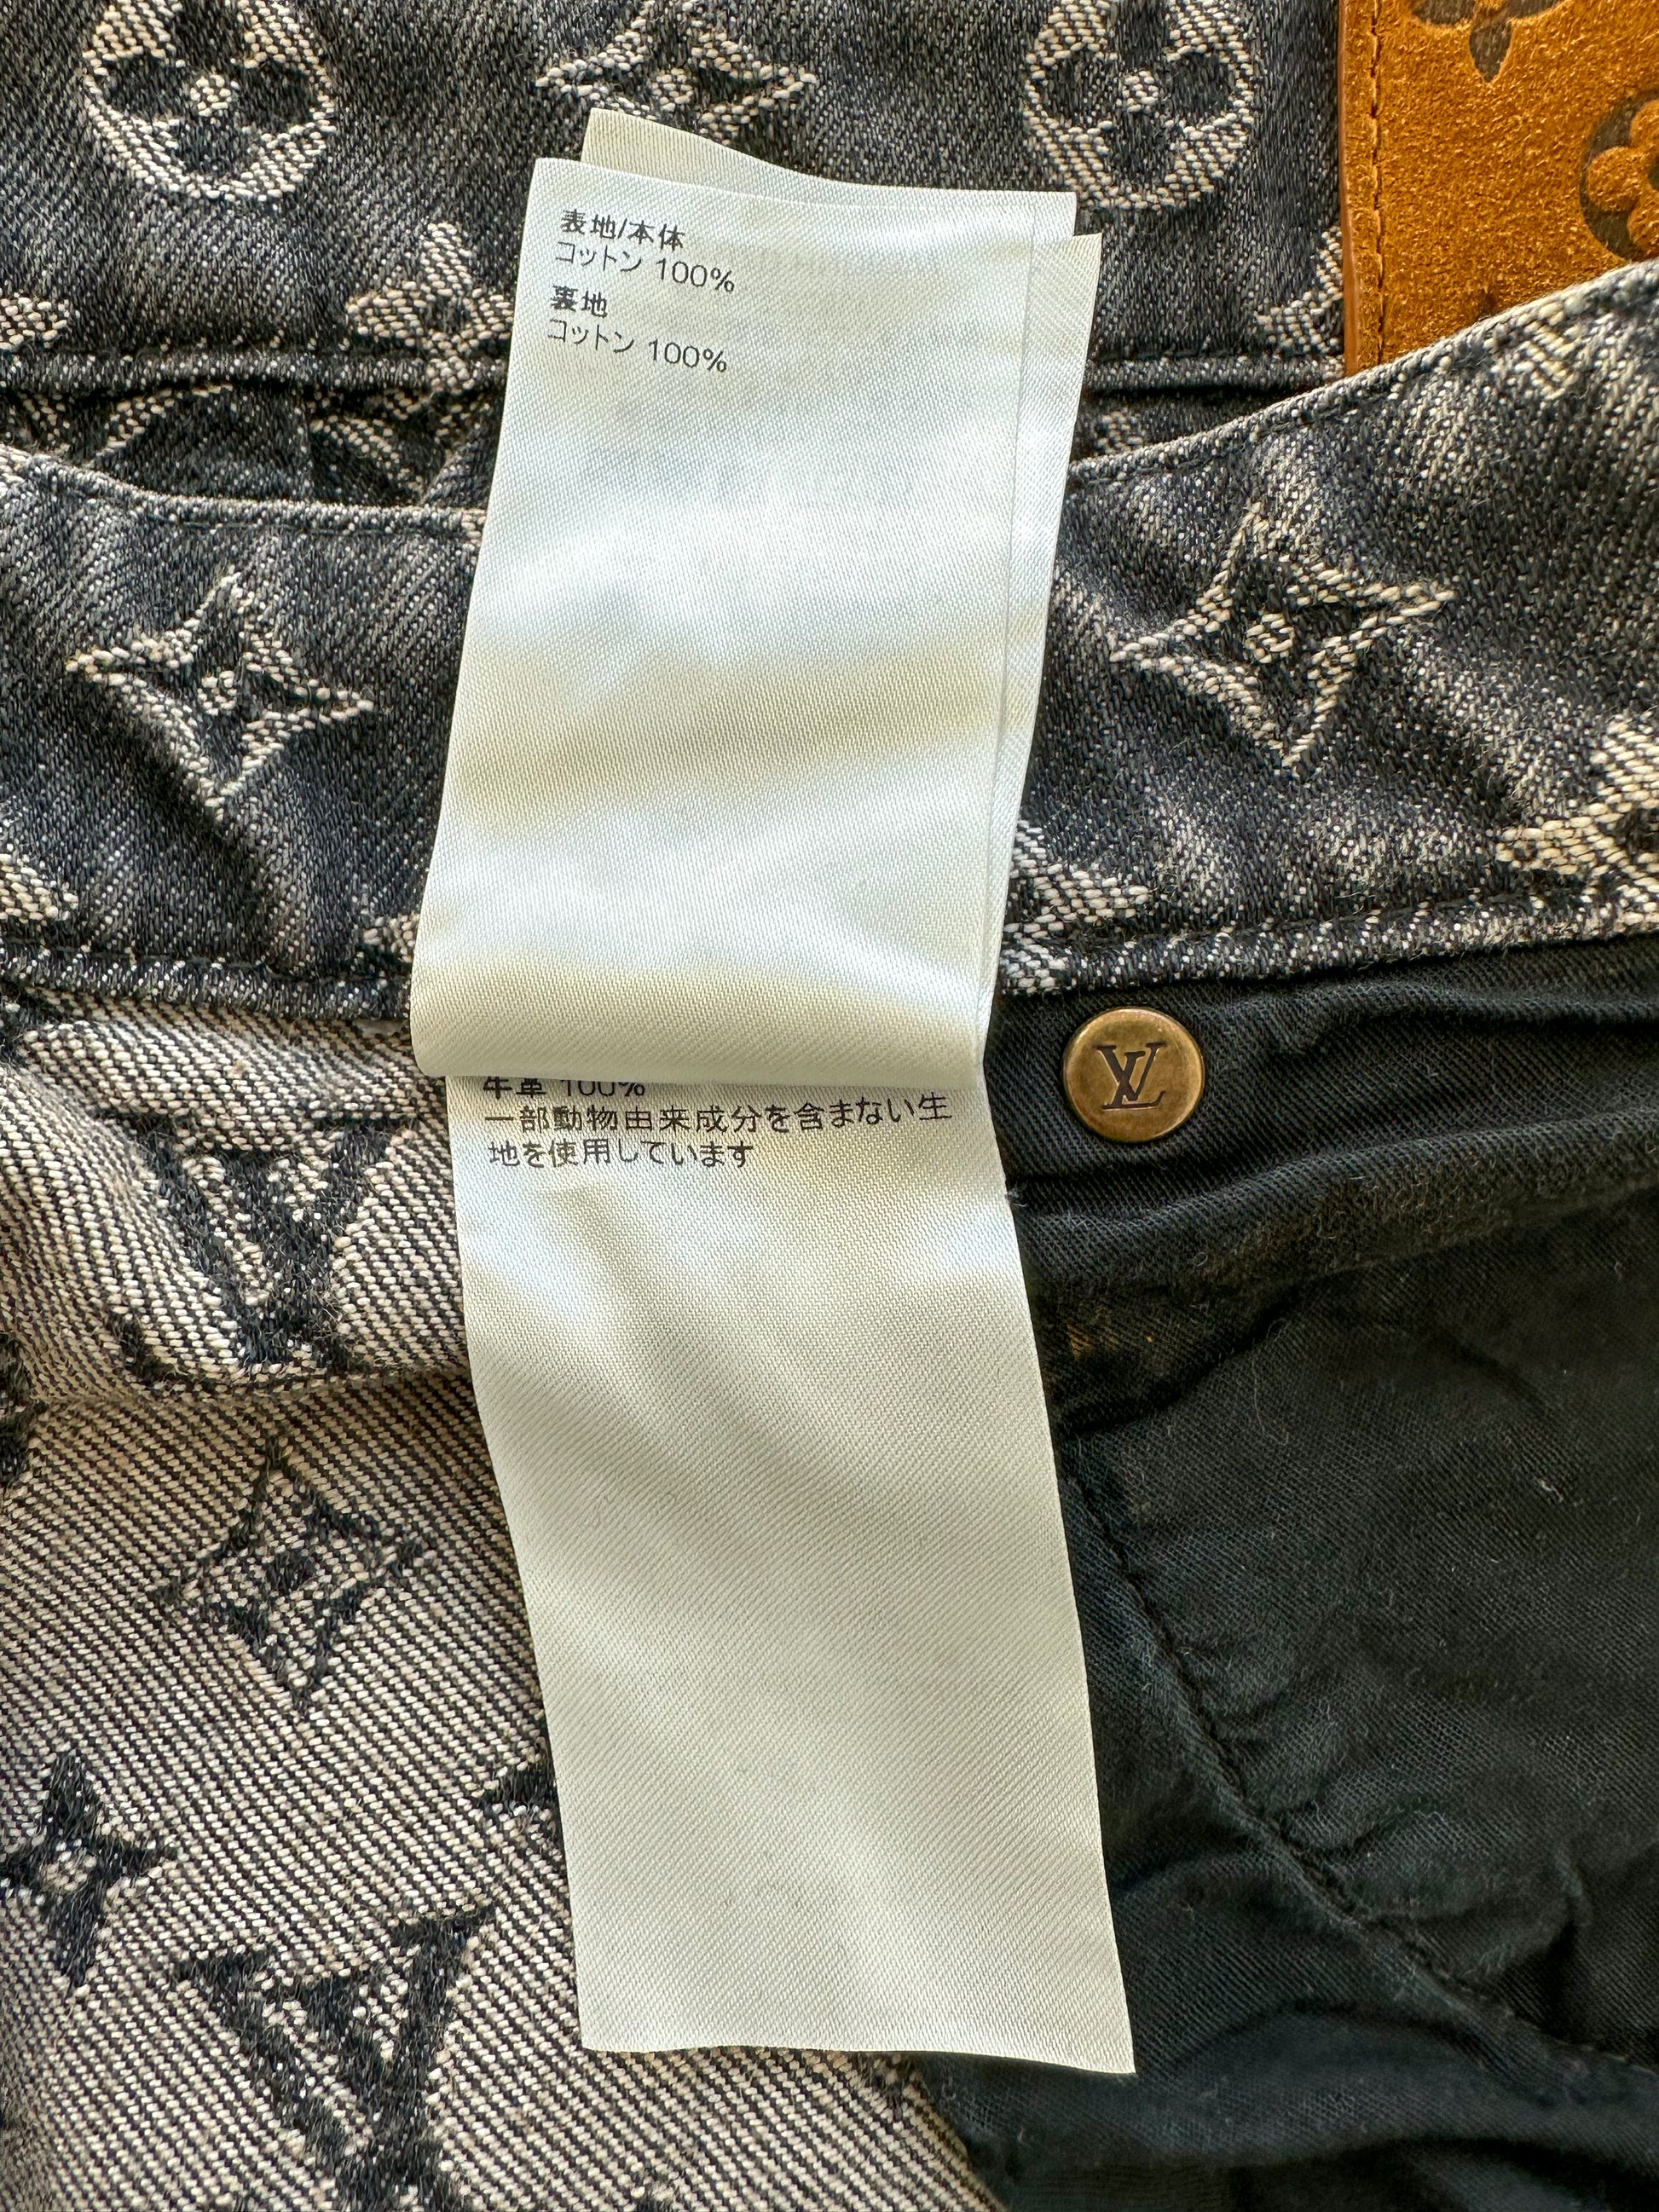 Louis Vuitton Baggy Denim Pants